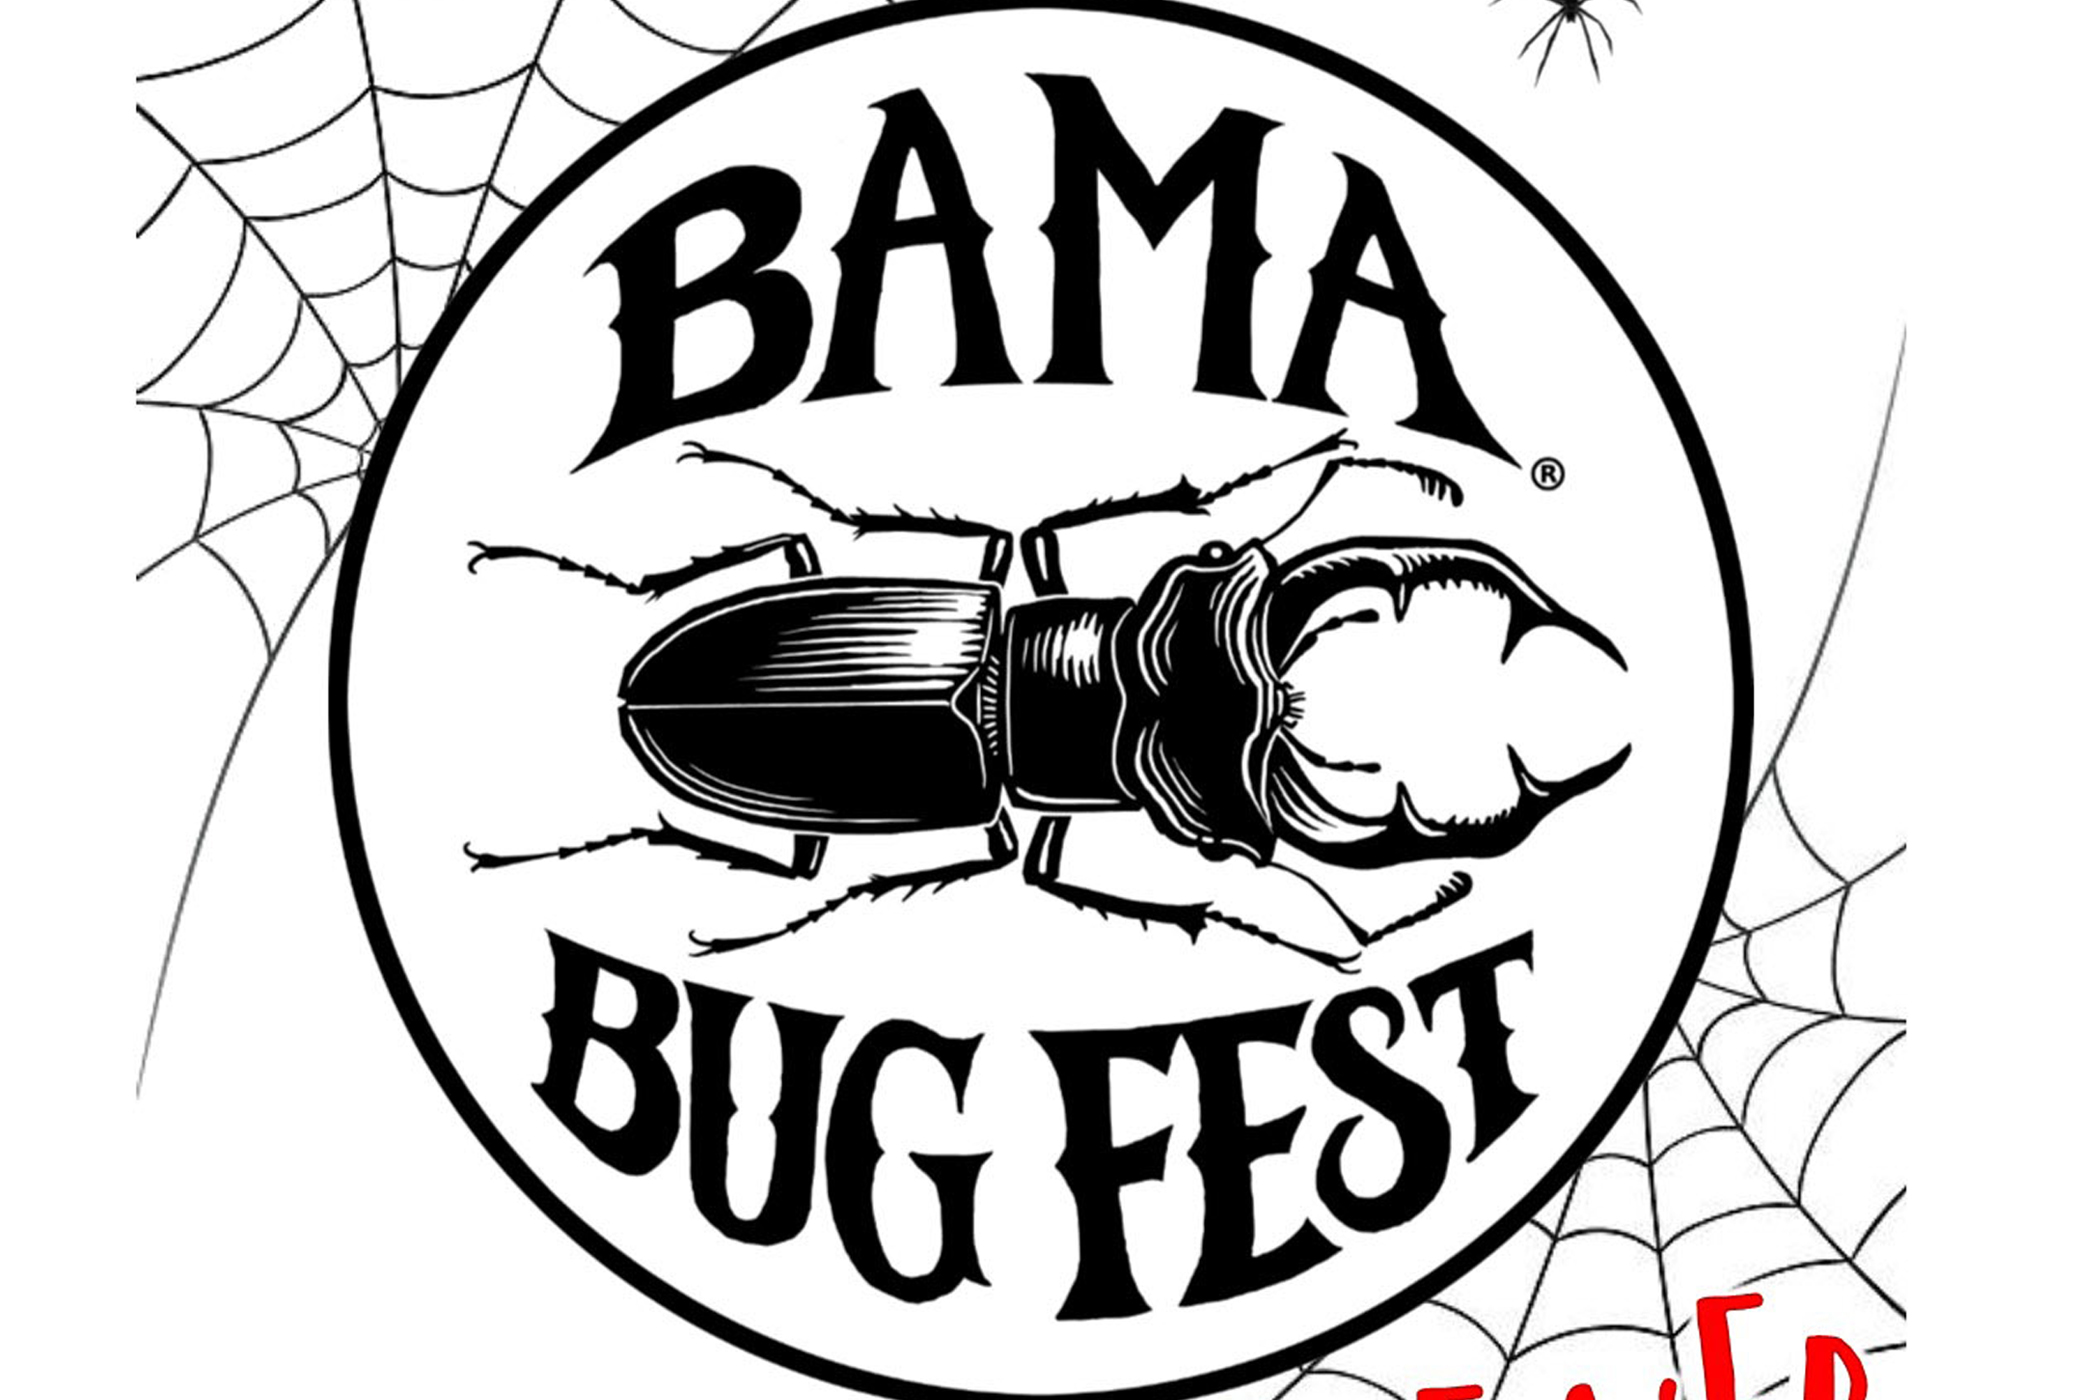 Bama Bug Fest Goes on the Web